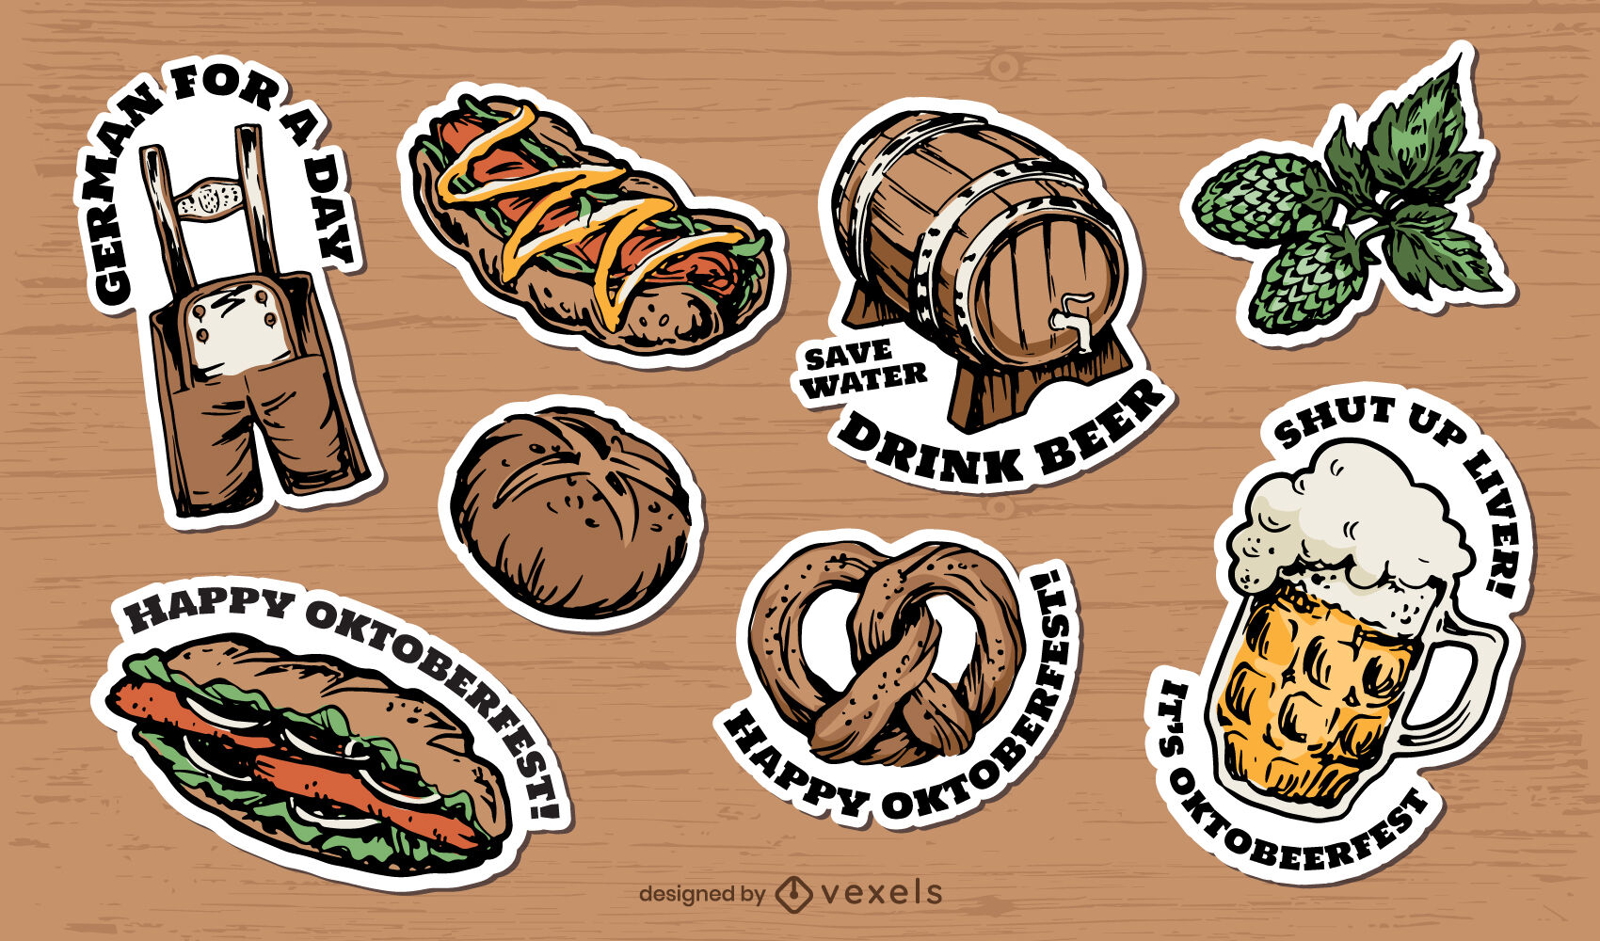 Oktoberfest elements sticker set